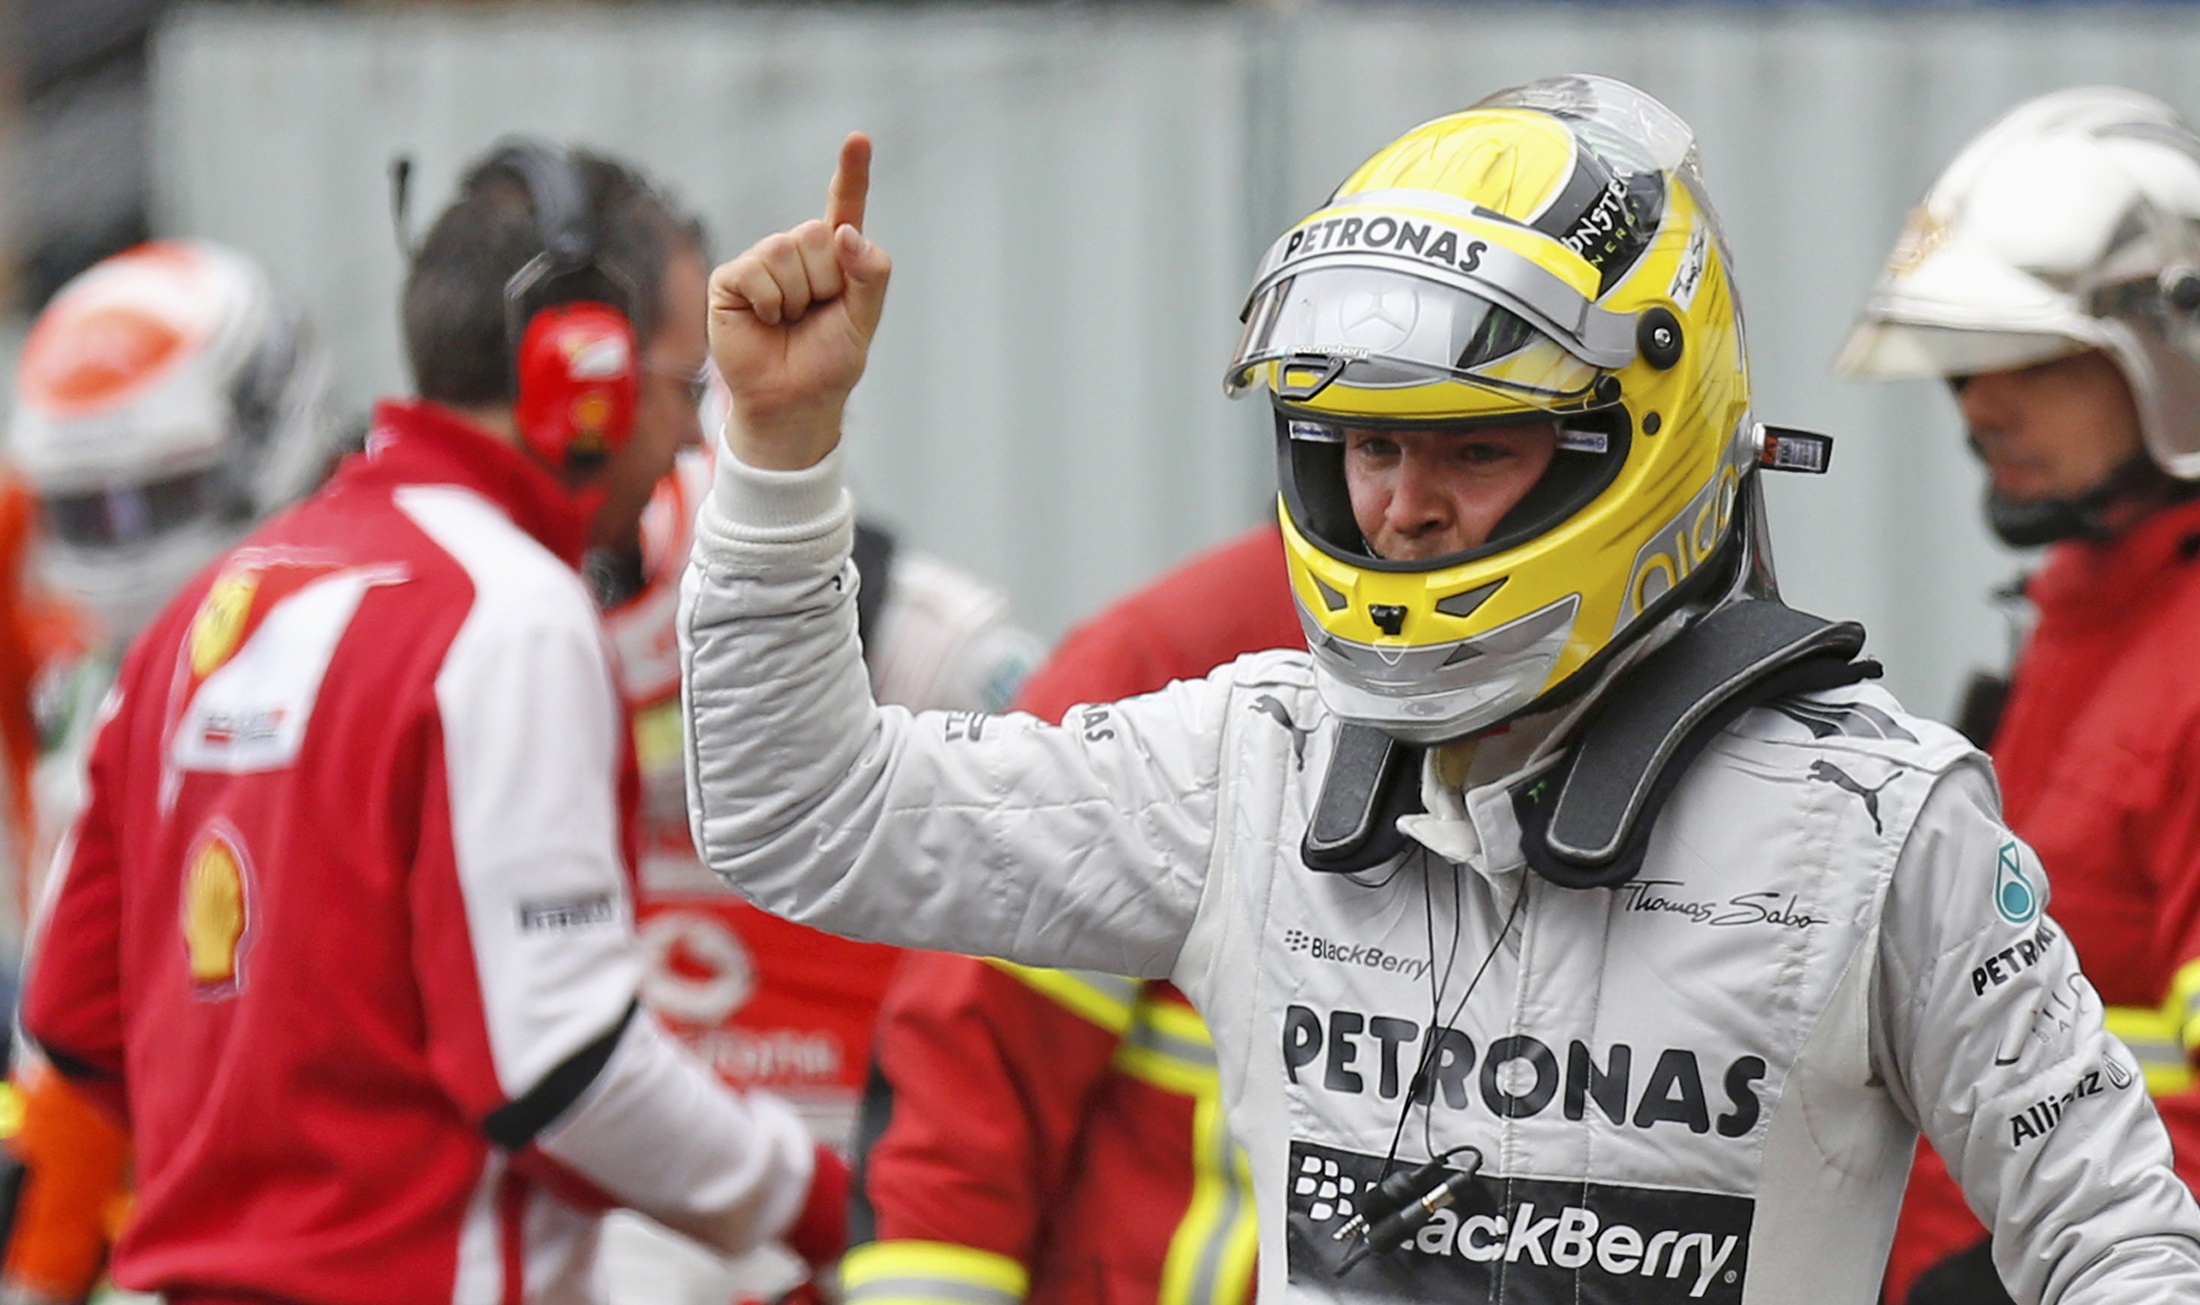 Pole position Nico Rosbergin